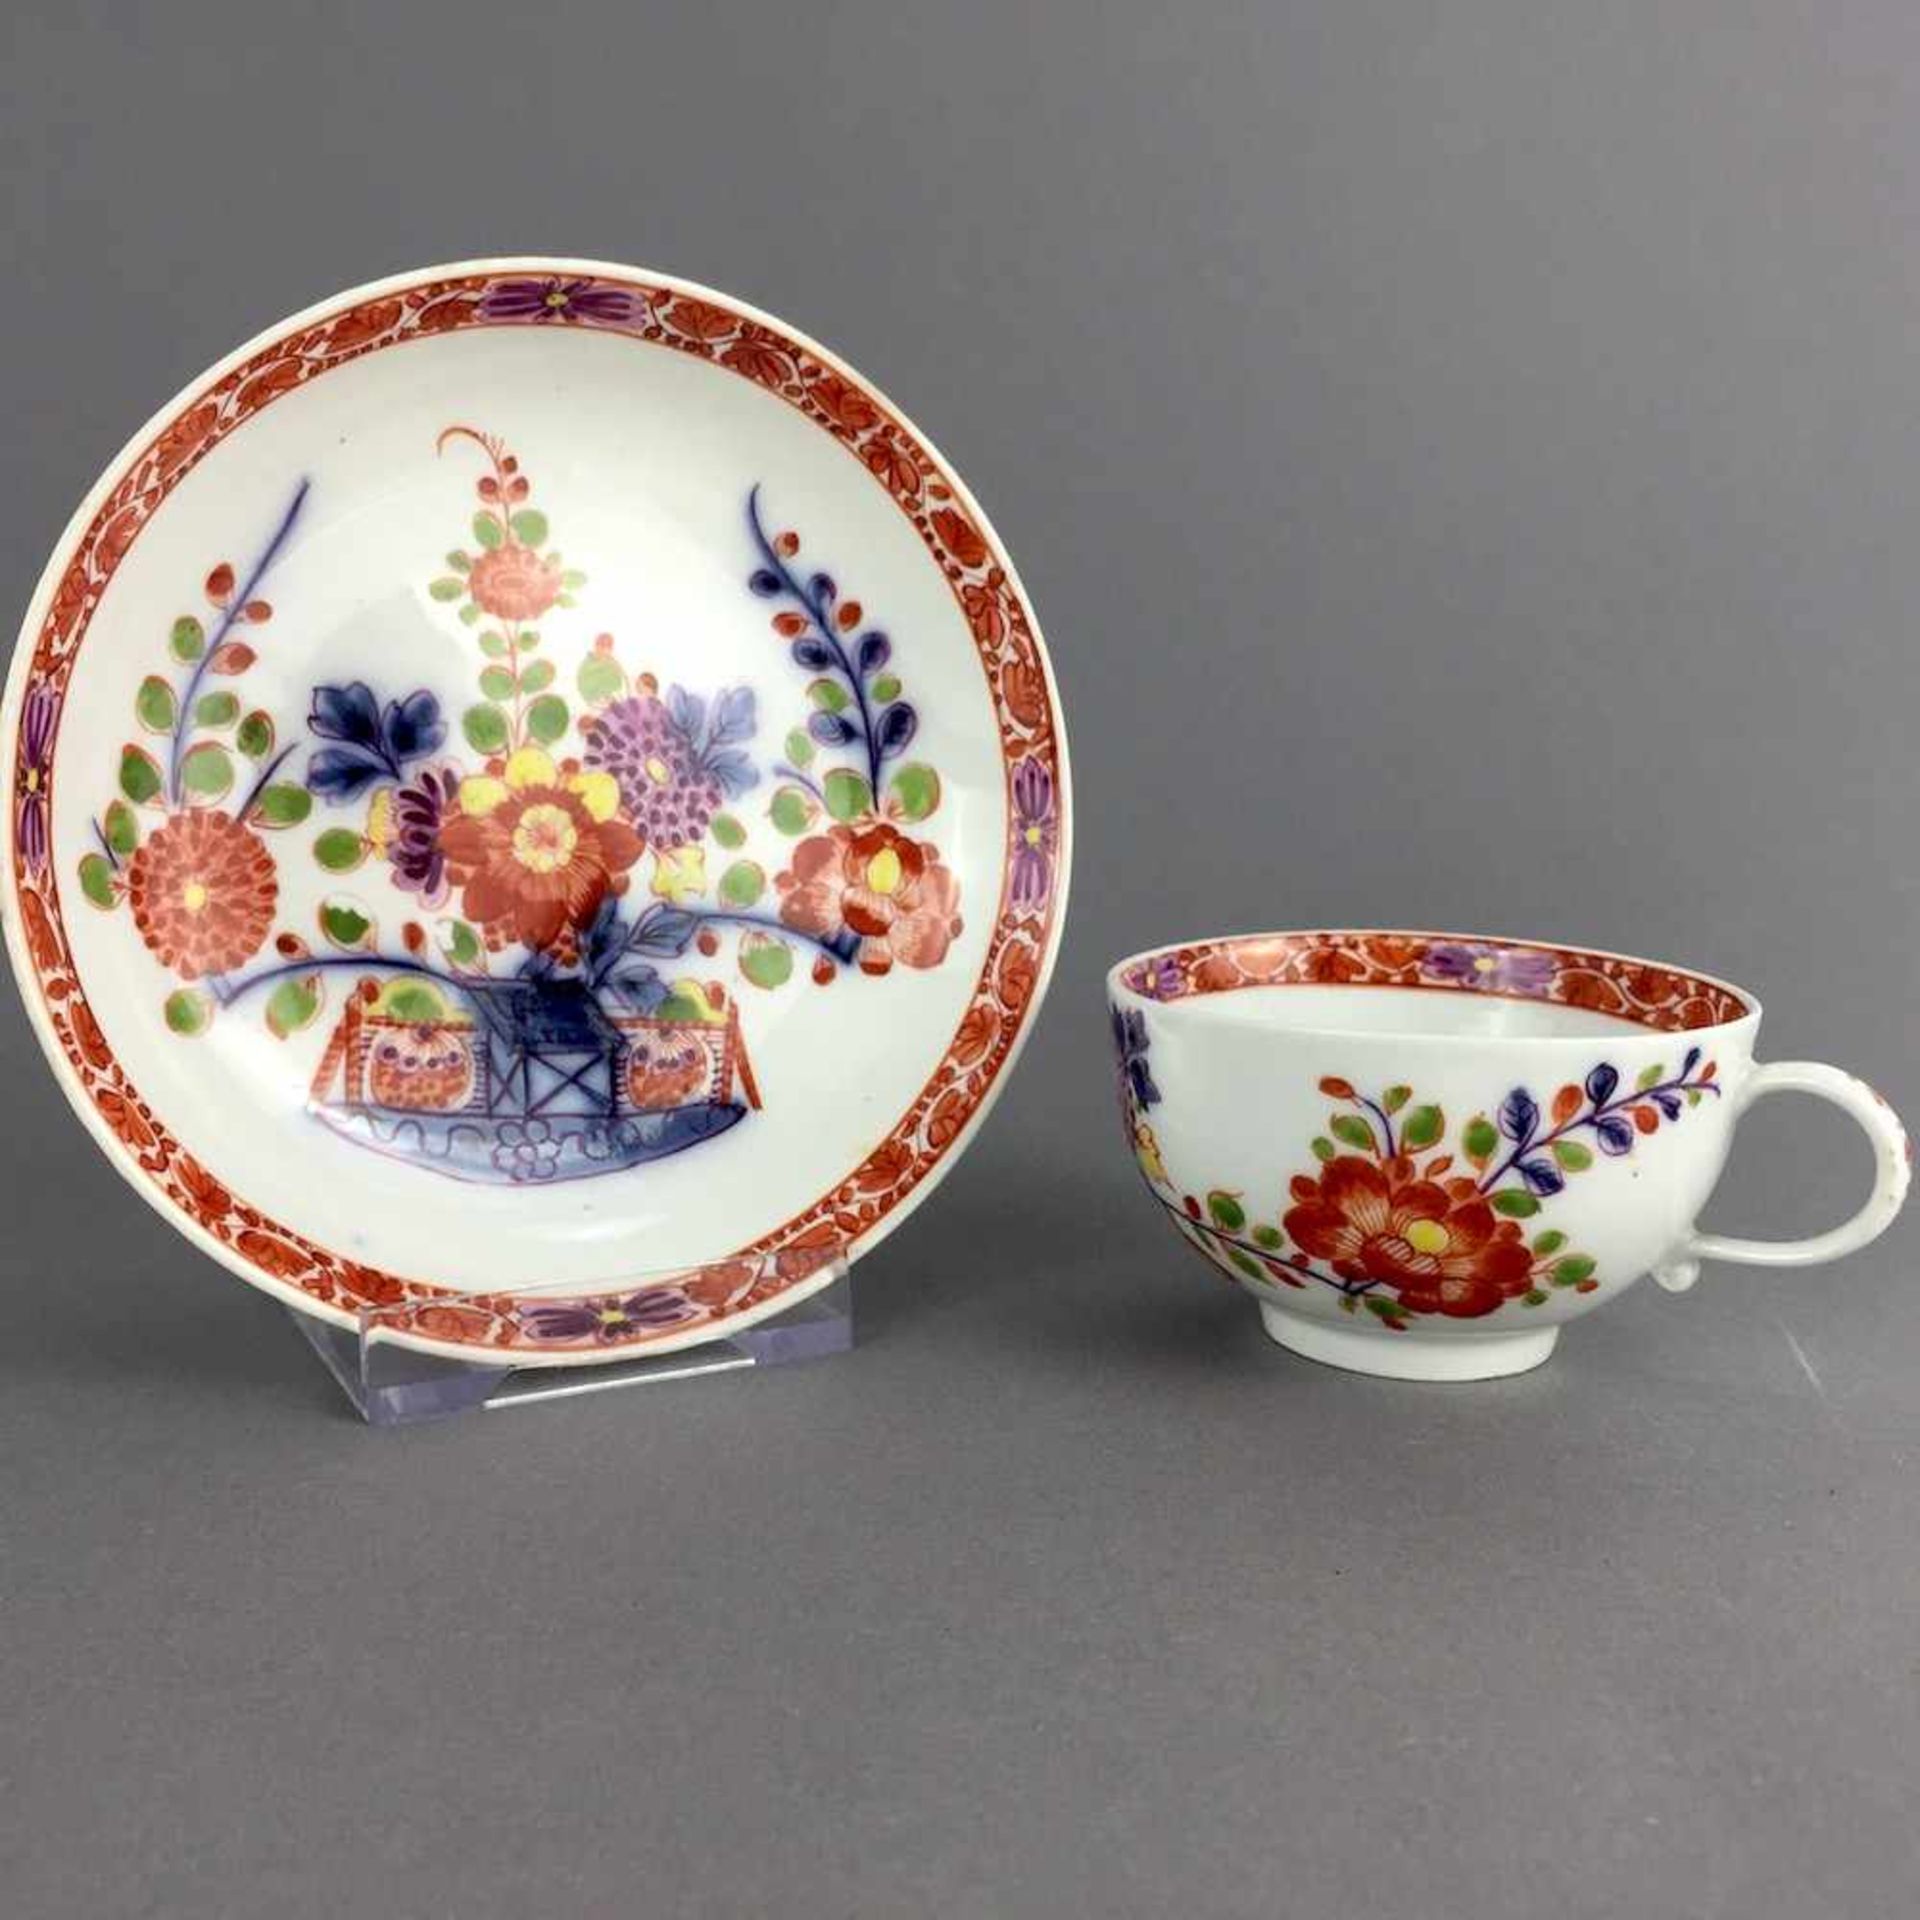 Seltene Tasse: Meissen Porzellan, 1730 - 1735. Tischchenmuster. Sehr selten und sehr gut.